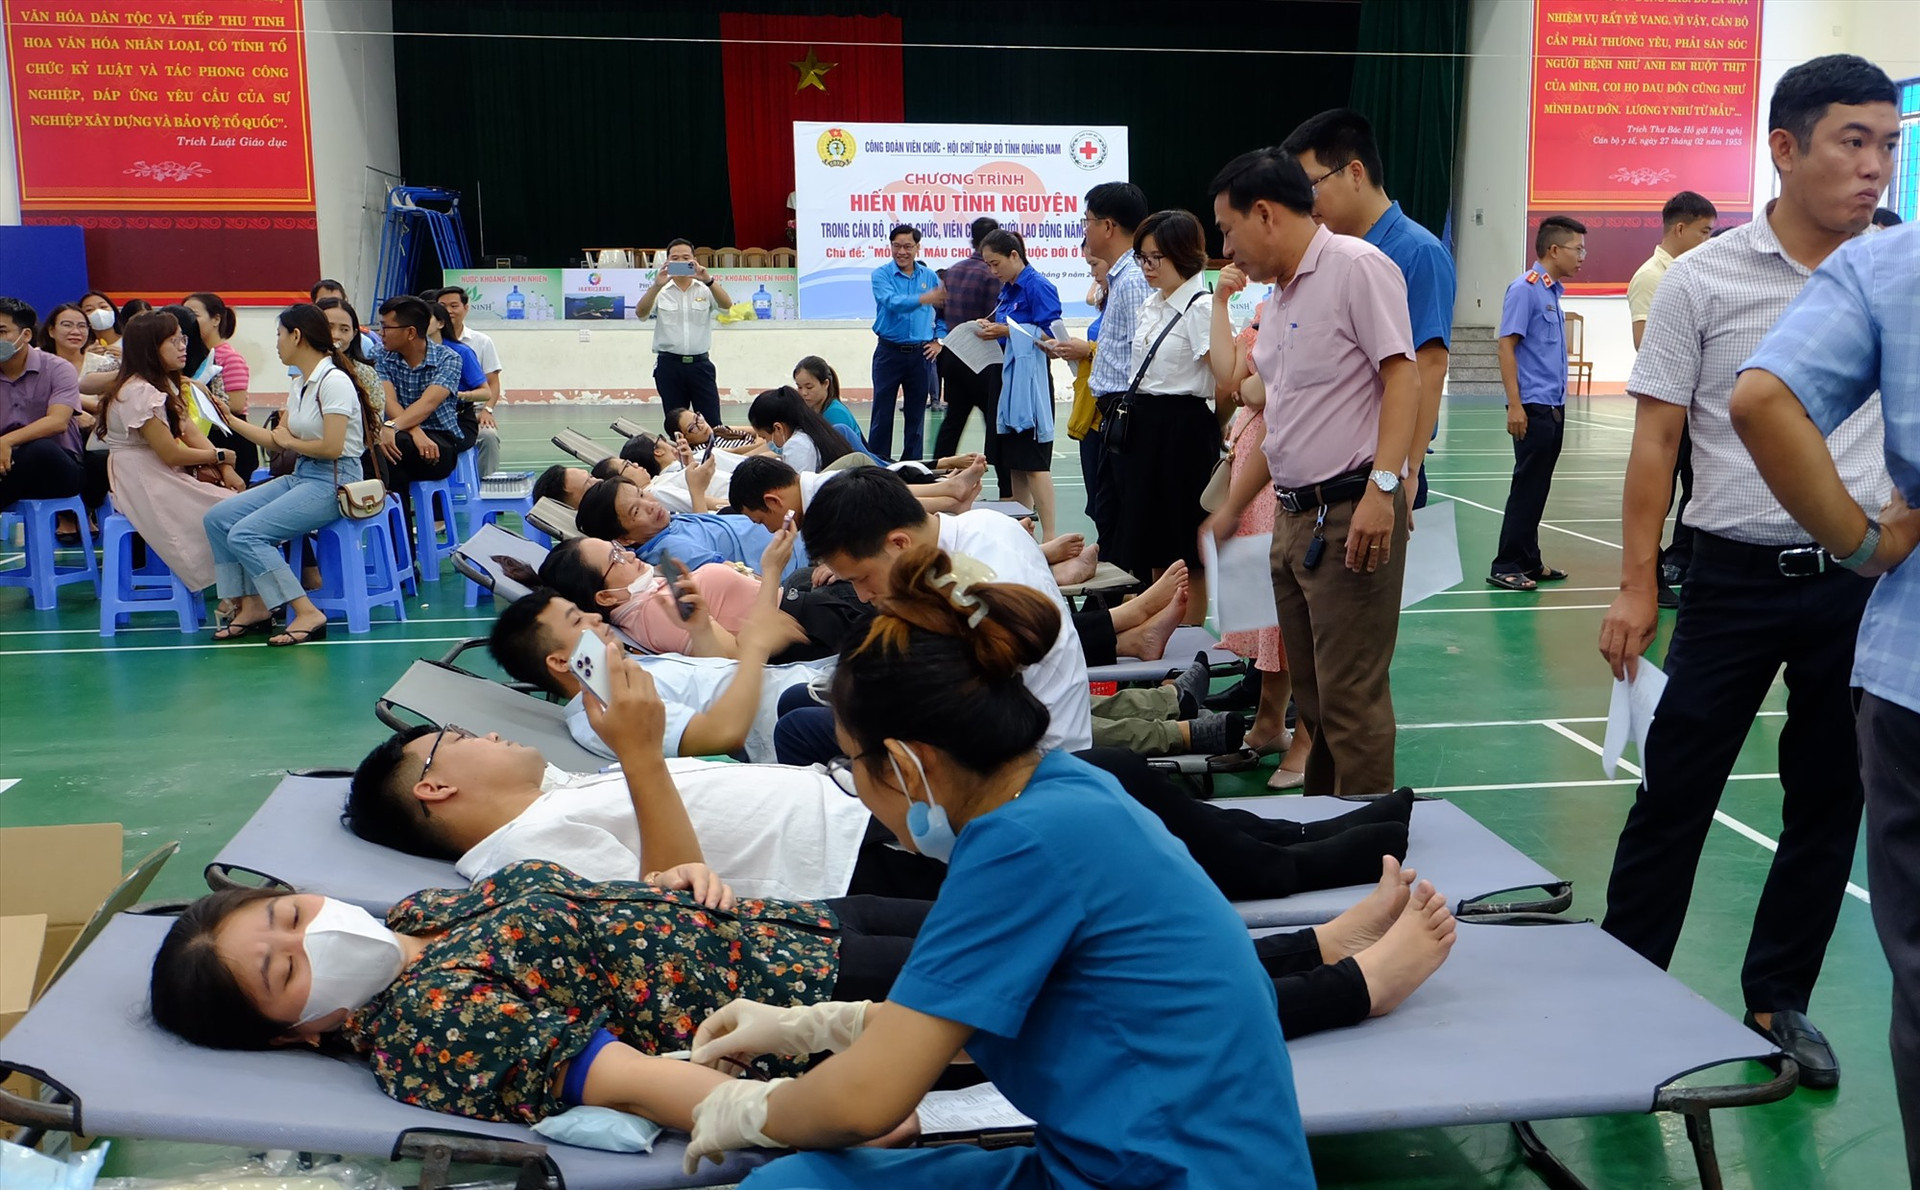 Đông đảo cán bộ viên chức người lao động tham gia chương trình hiến máu tình nguyện. Ảnh: M.L